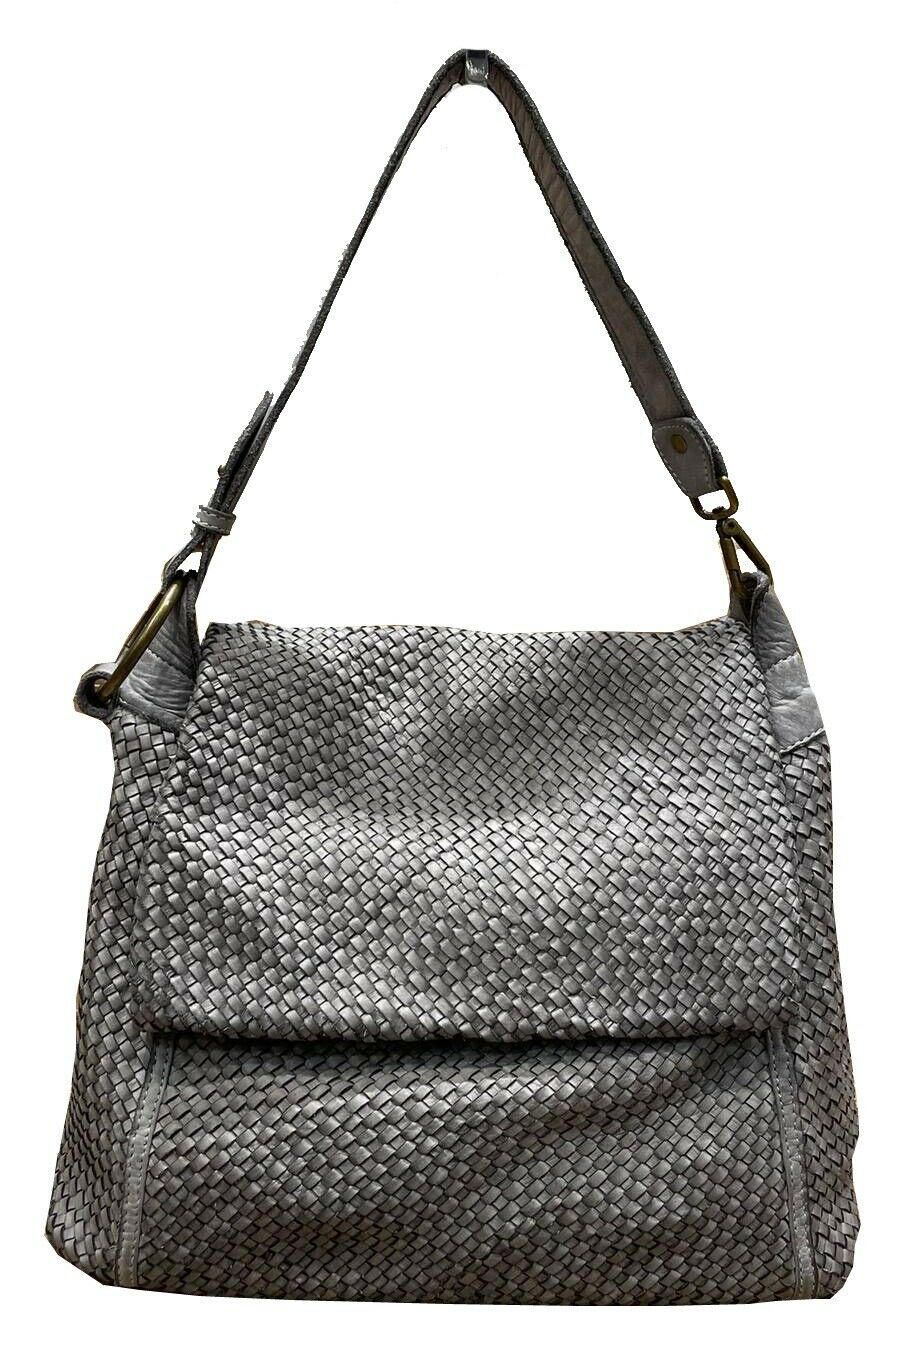 BZNA Bag Tarja Grau Italy Designer Messenger Damen Handtasche Schultertasche